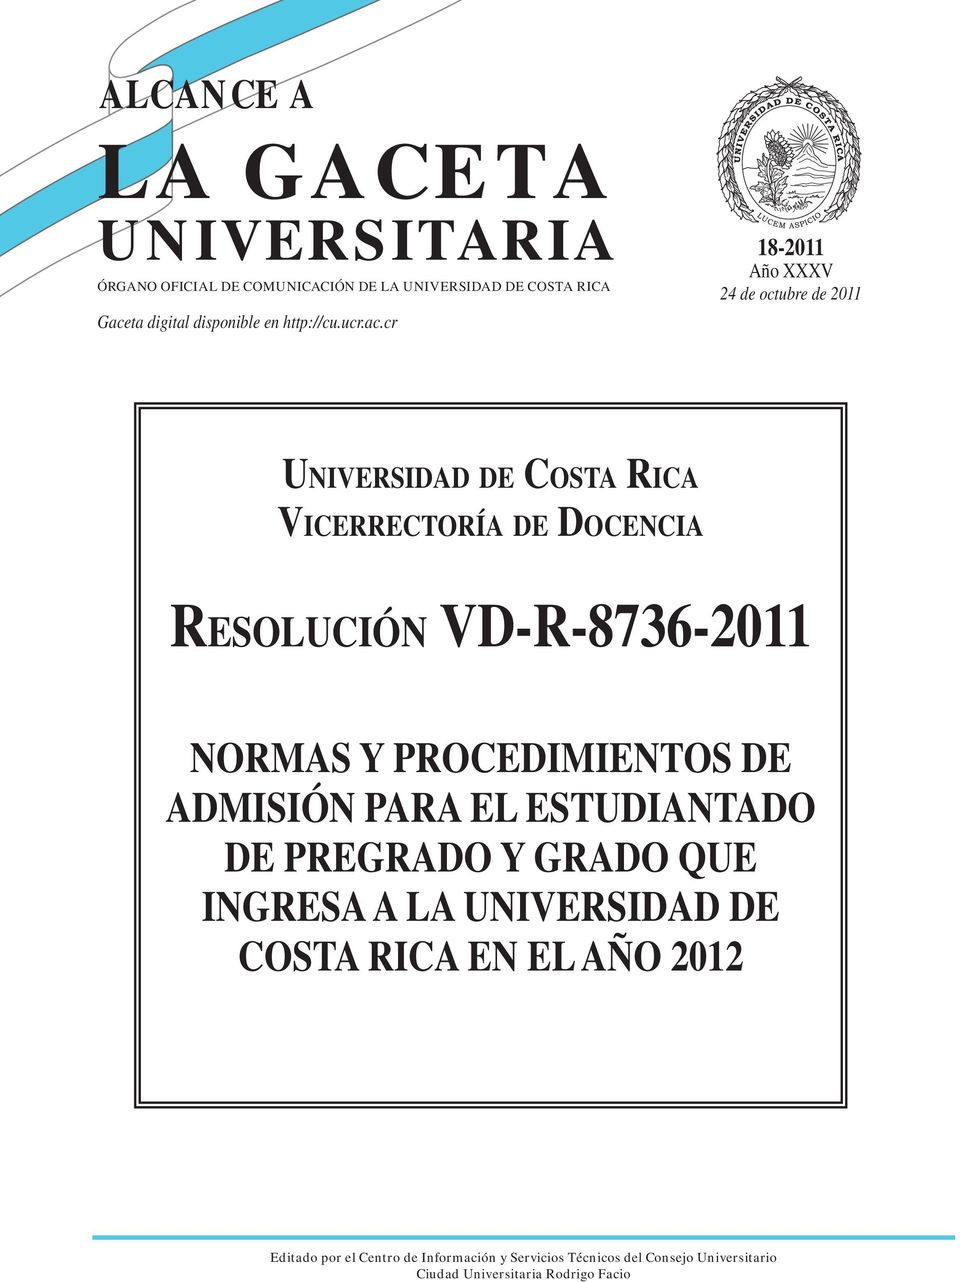 cr 18-2011 Año XXXV 24 de octubre de 2011 UNIVERSIDAD DE COSTA RICA VICERRECTORÍA DE DOCENCIA RESOLUCIÓN VD-R-8736-2011 NORMAS Y